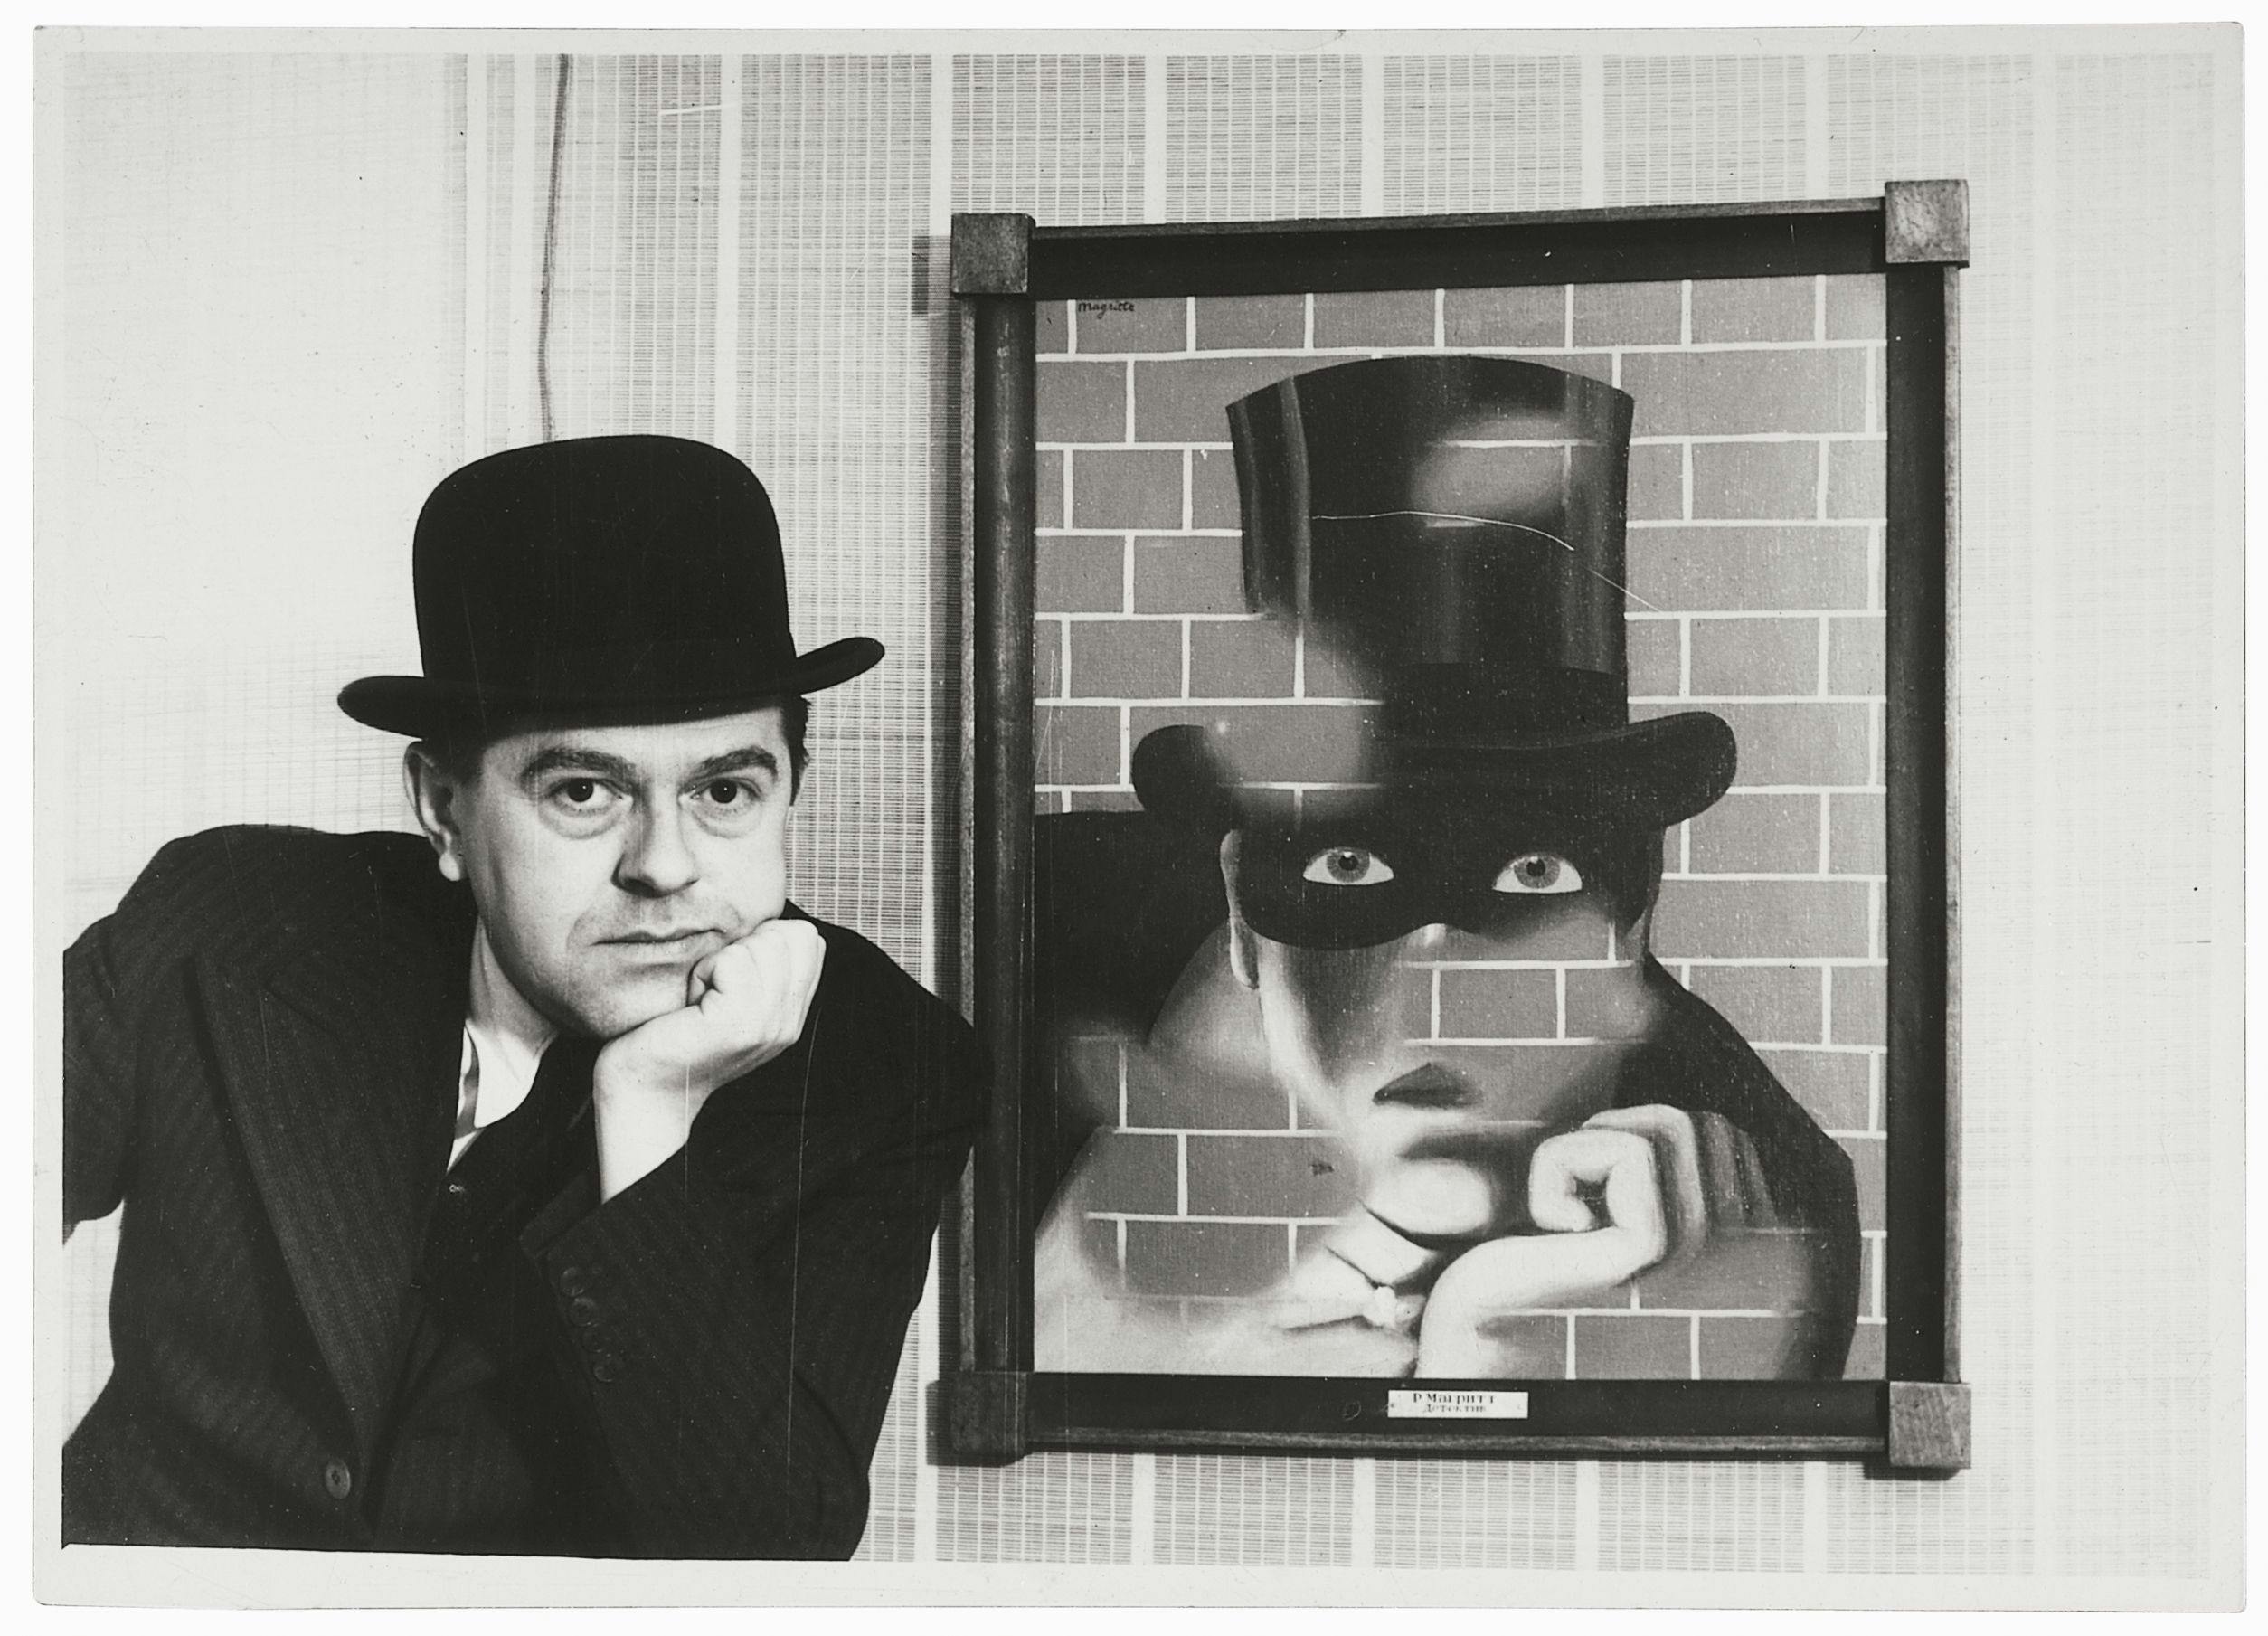 Konstnären Magritte tittar in i kameran bredvid en tavla